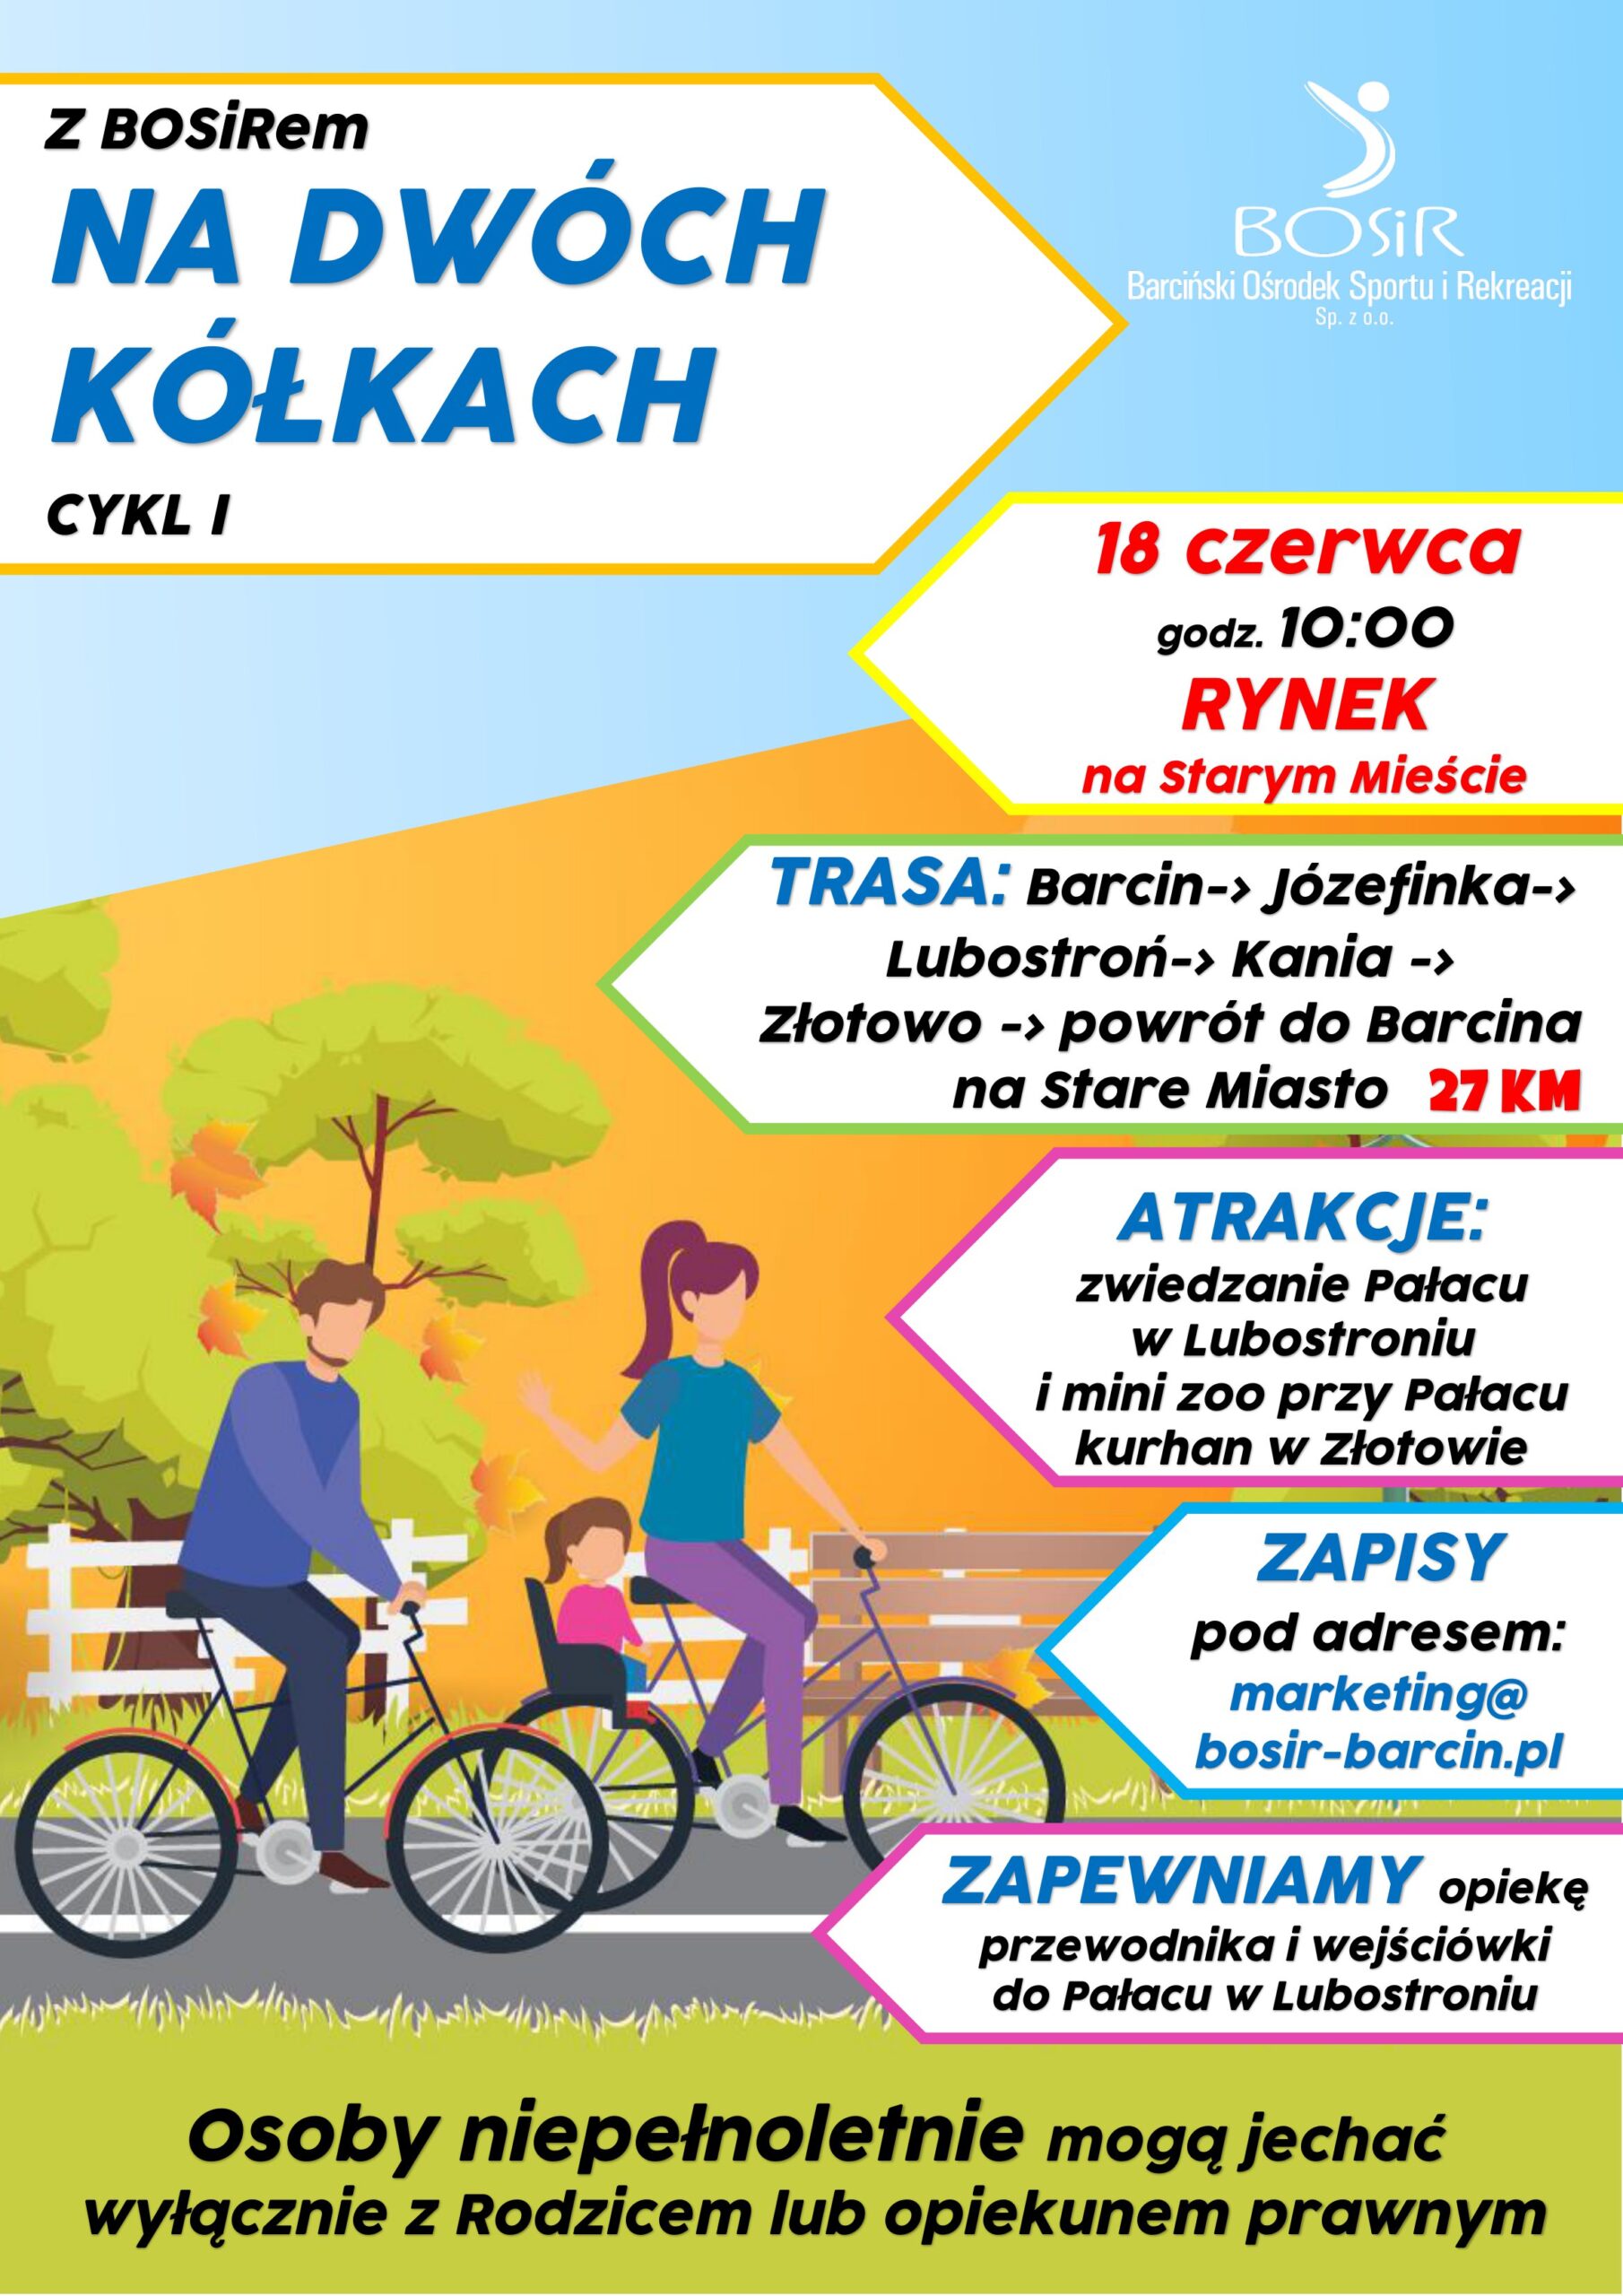 You are currently viewing 18 czerwca zapraszamy wszystkich miłośników rajdów rowerowych na wycieczkę Z BOSiRem na dwóch kółkach – cykl I.